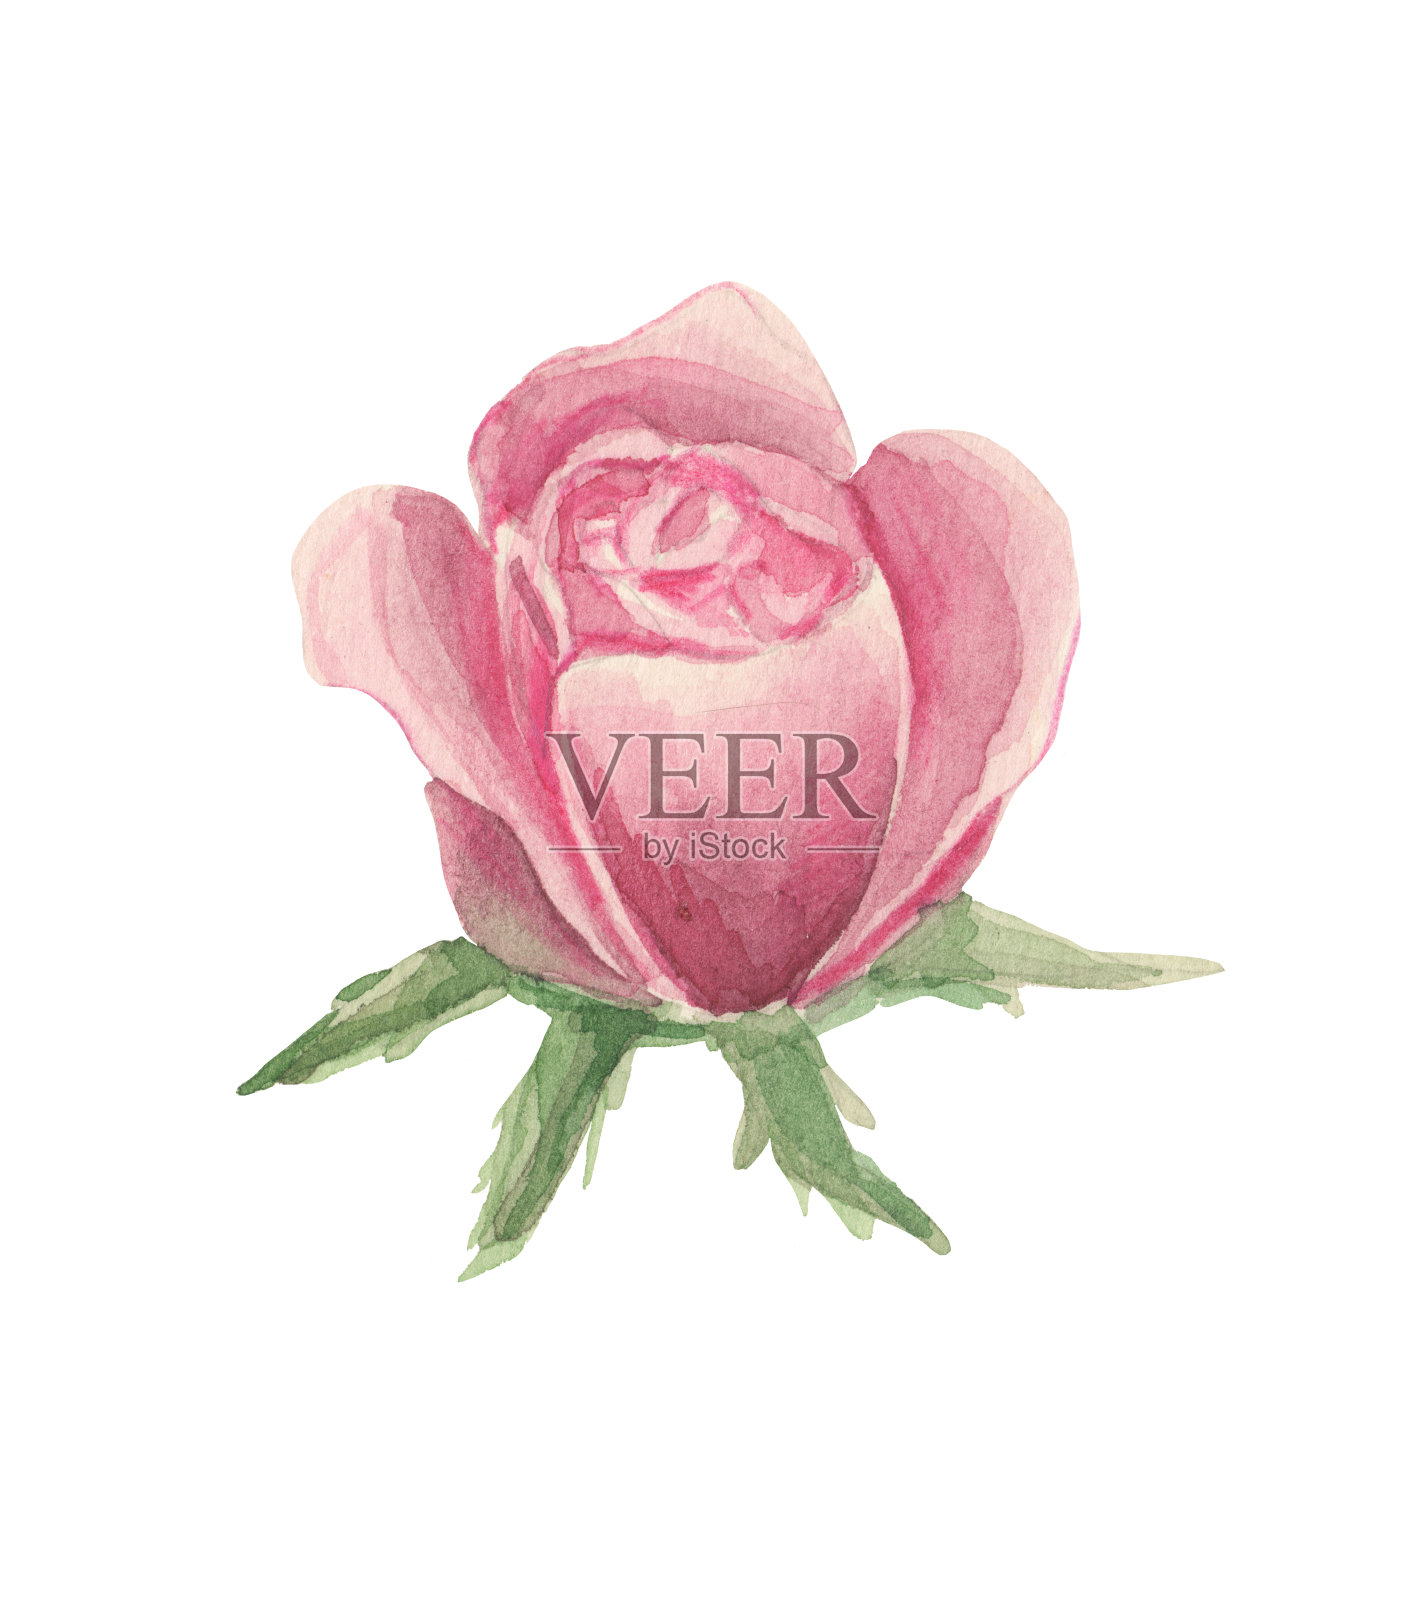 有萼片的程式化的粉红色玫瑰花插画图片素材